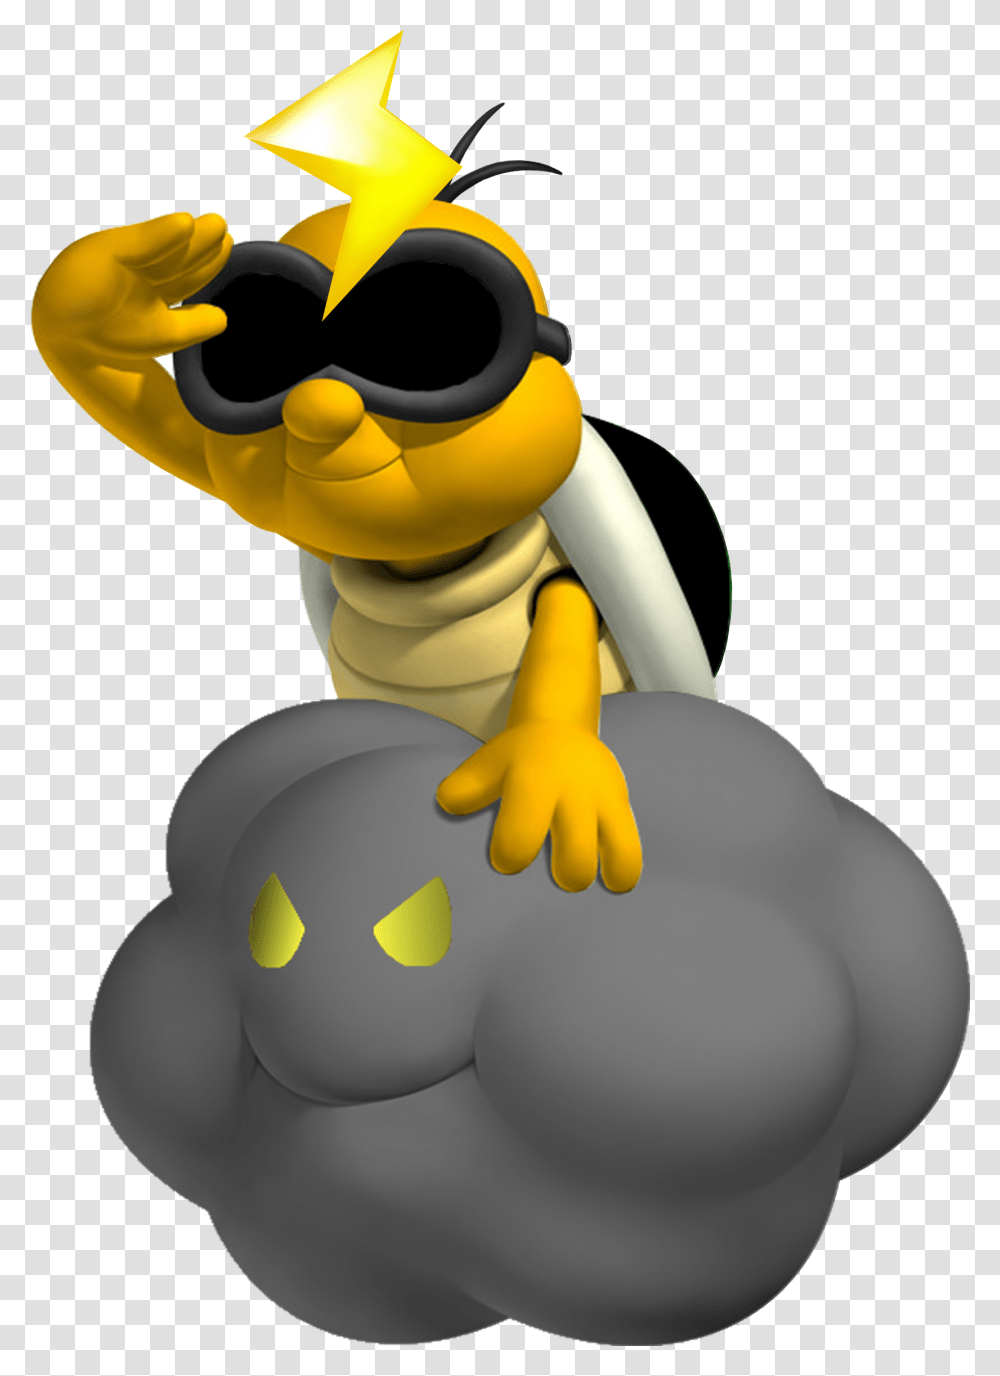 Lakithunder Goanimate V Wiki New Super Mario Bros Lakithunder, Toy, Wasp, Bee, Insect Transparent Png